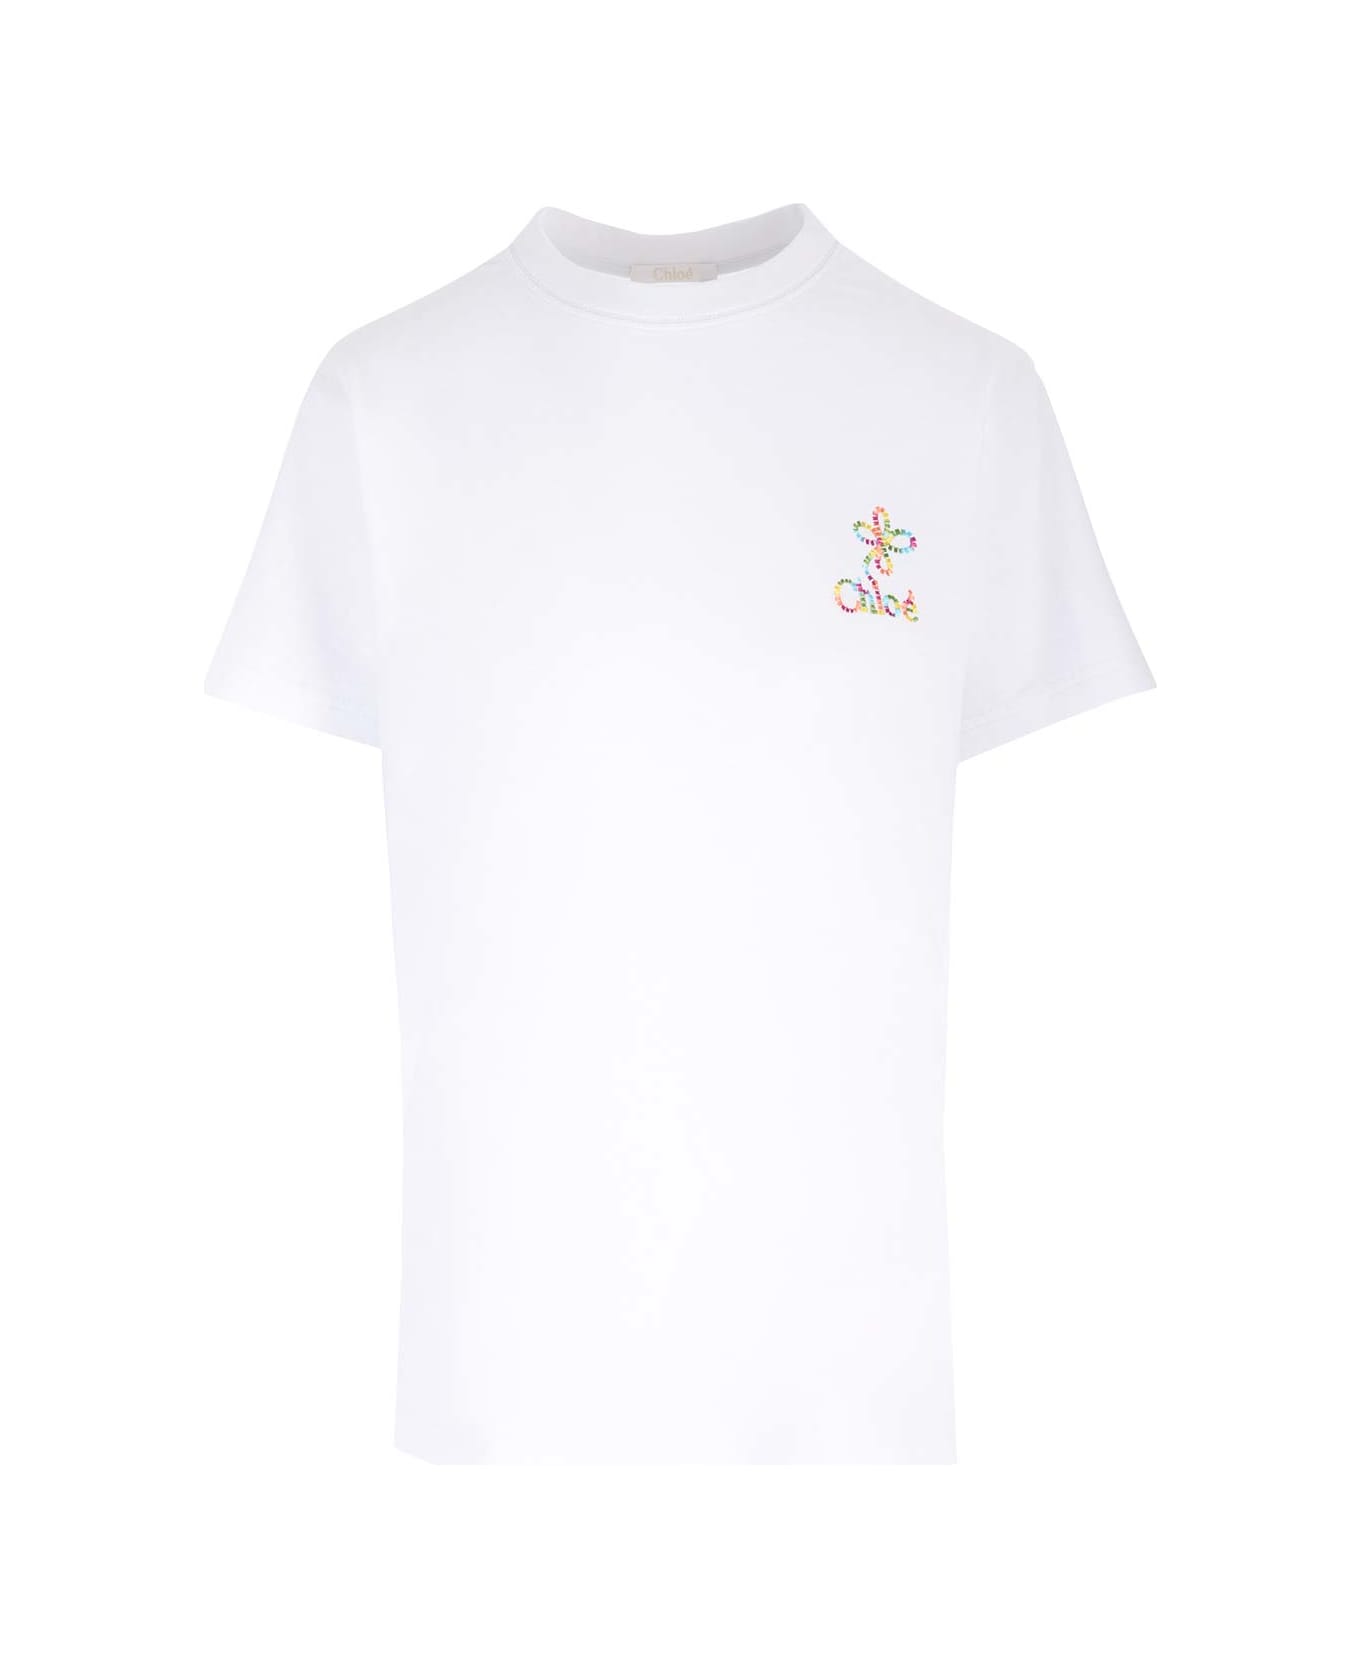 Chloé Signature T-shirt - White Tシャツ